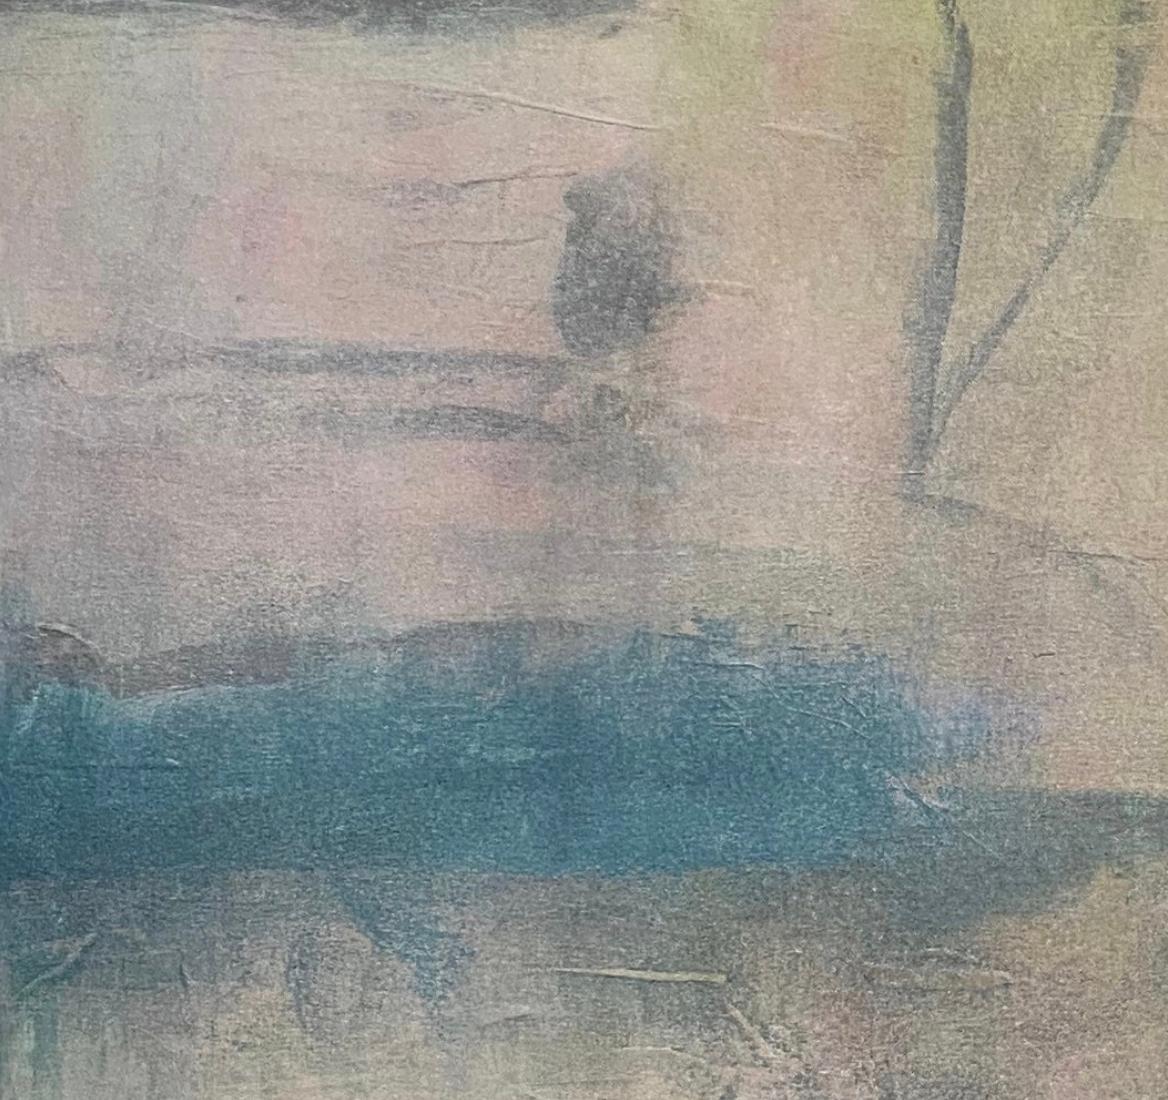 Le lever du soleil sur la baie, paysage marin contemporain, bleu, rose, réflexion, flair asiatique - Painting de Juanita Bellavance 